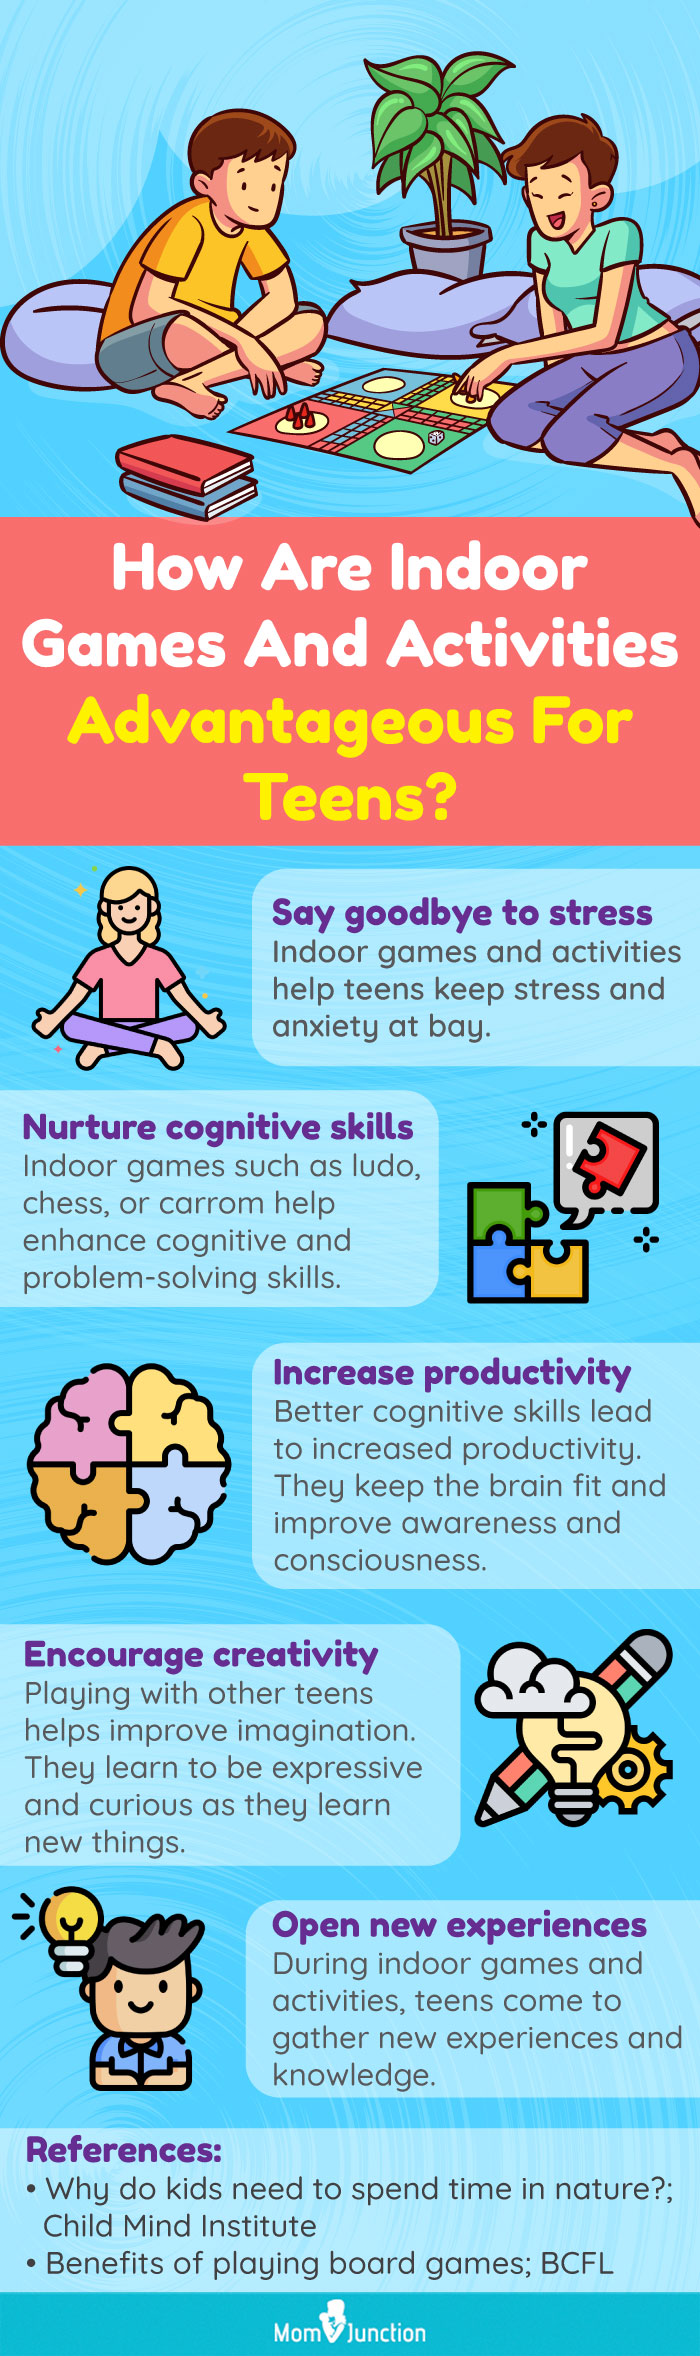 Top 15 Fun Indoor Games And Activities For Teens